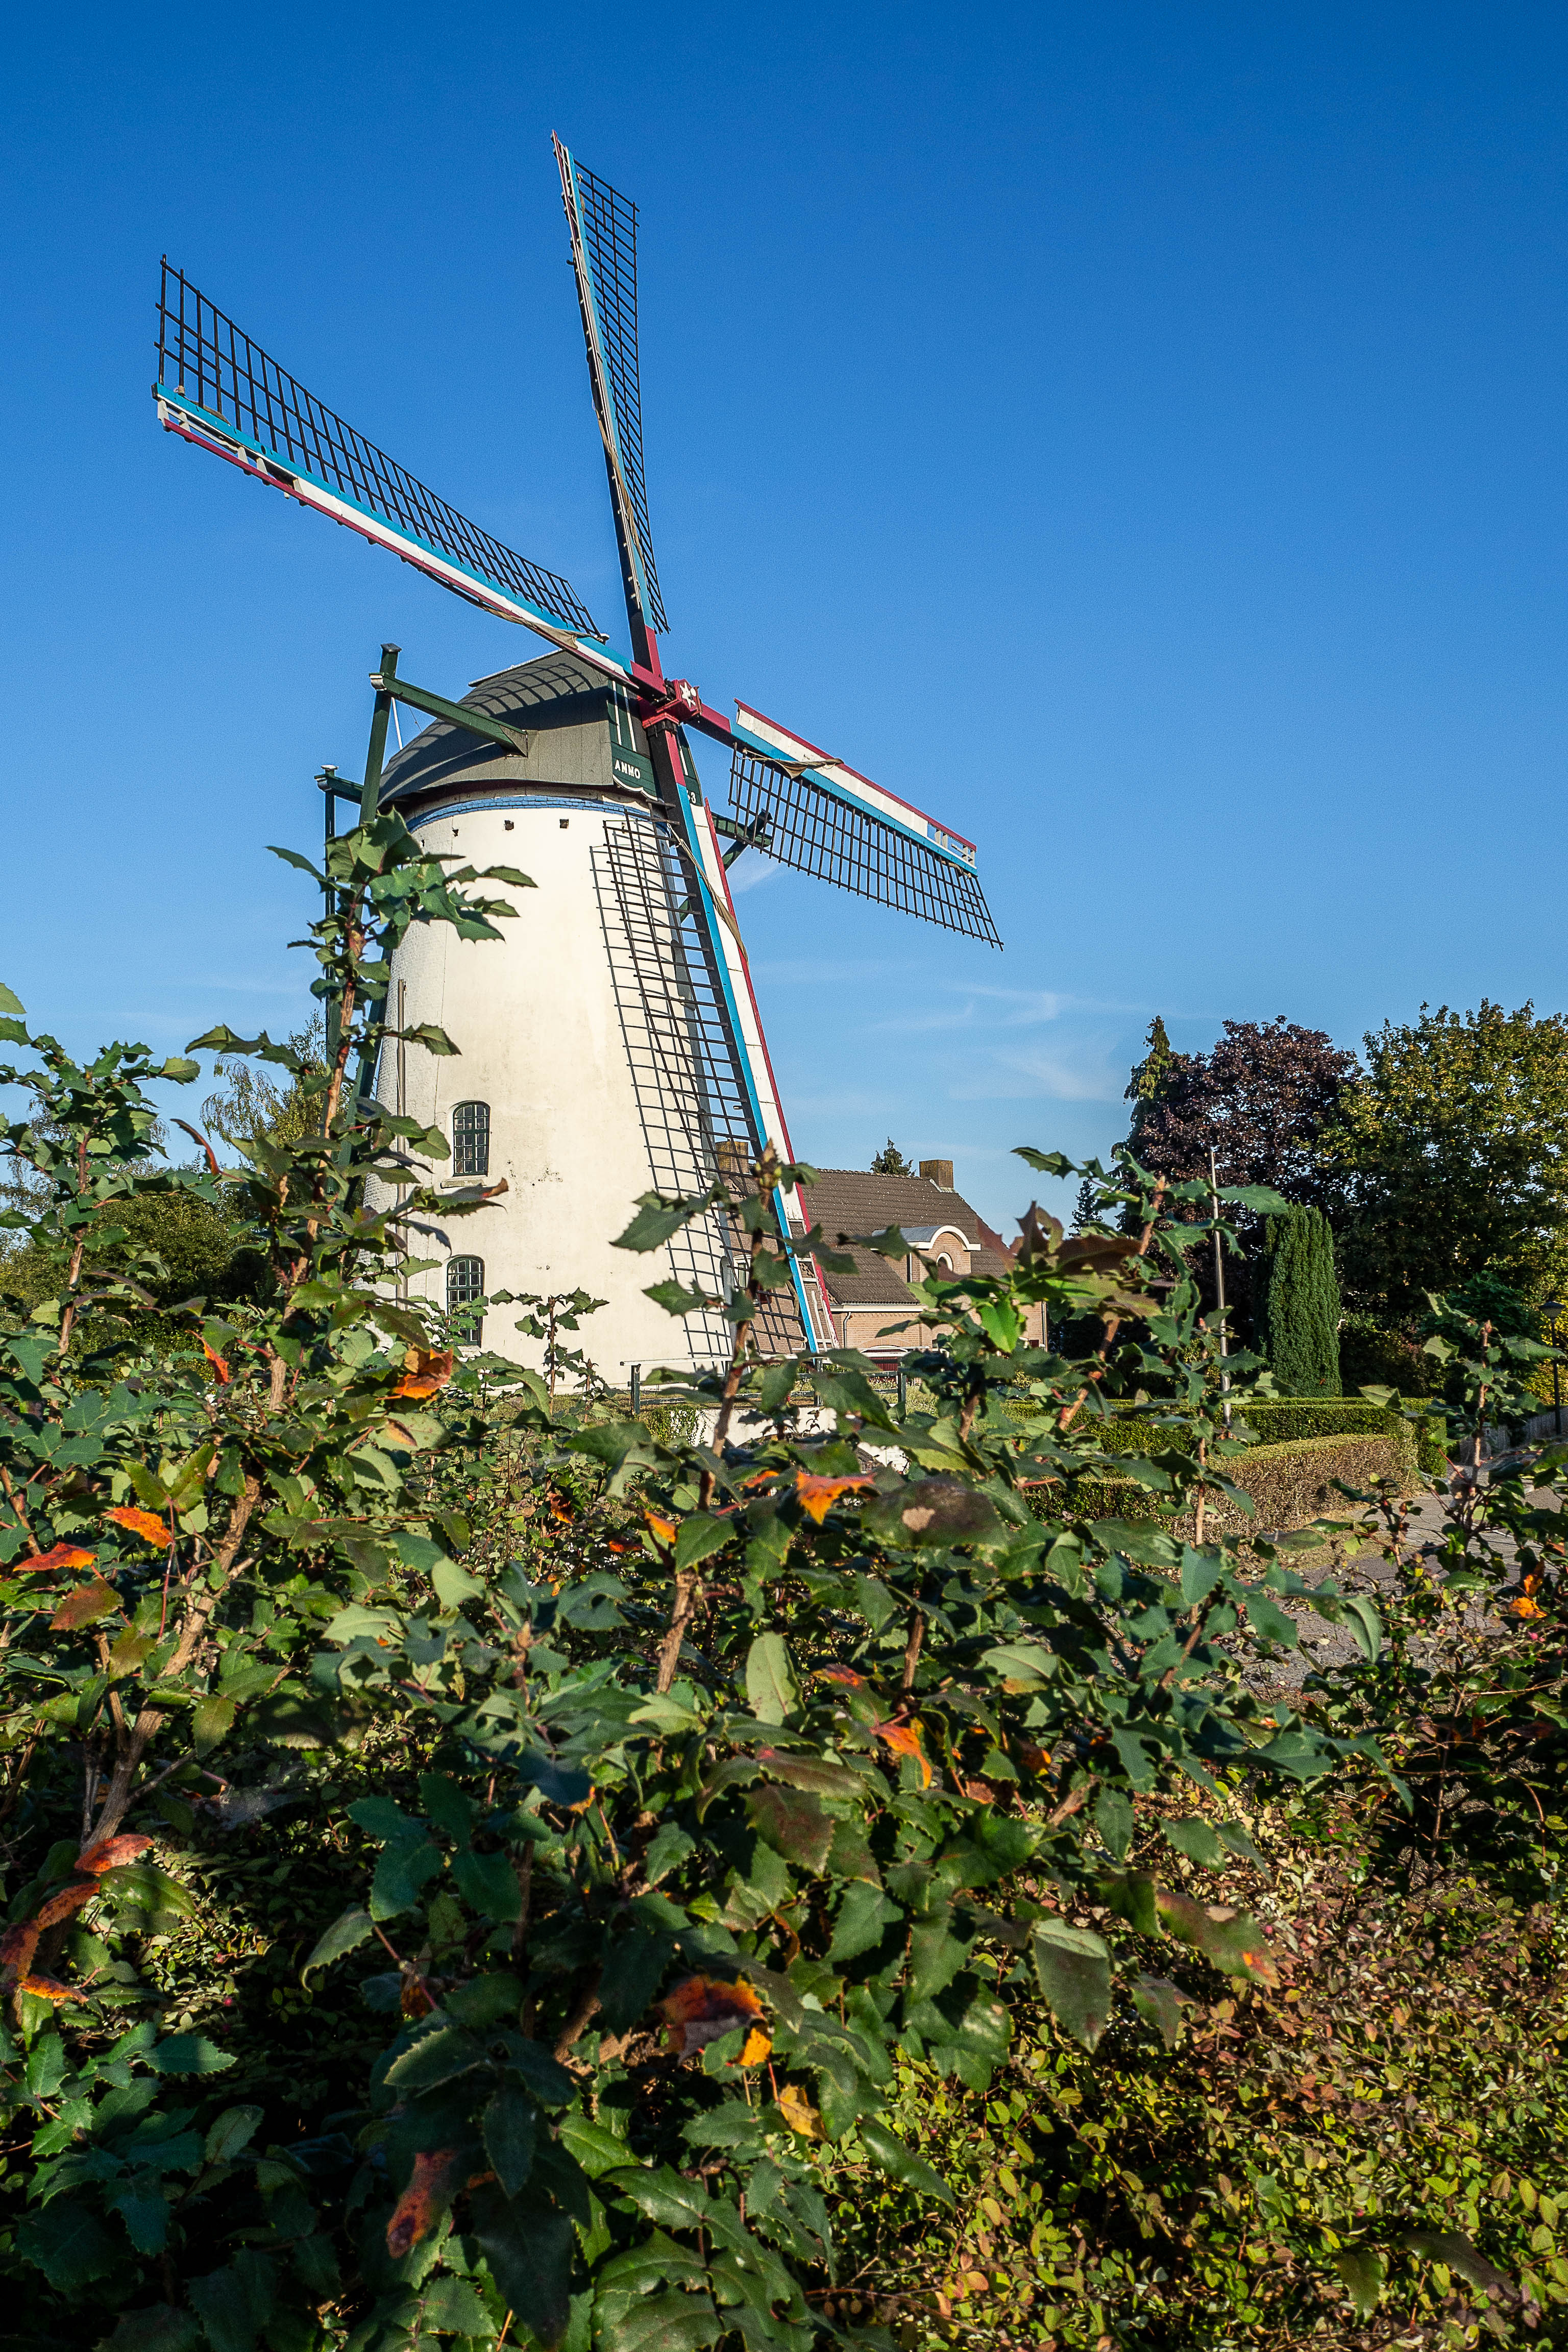 De windmolen 't Nupke in Geldrop